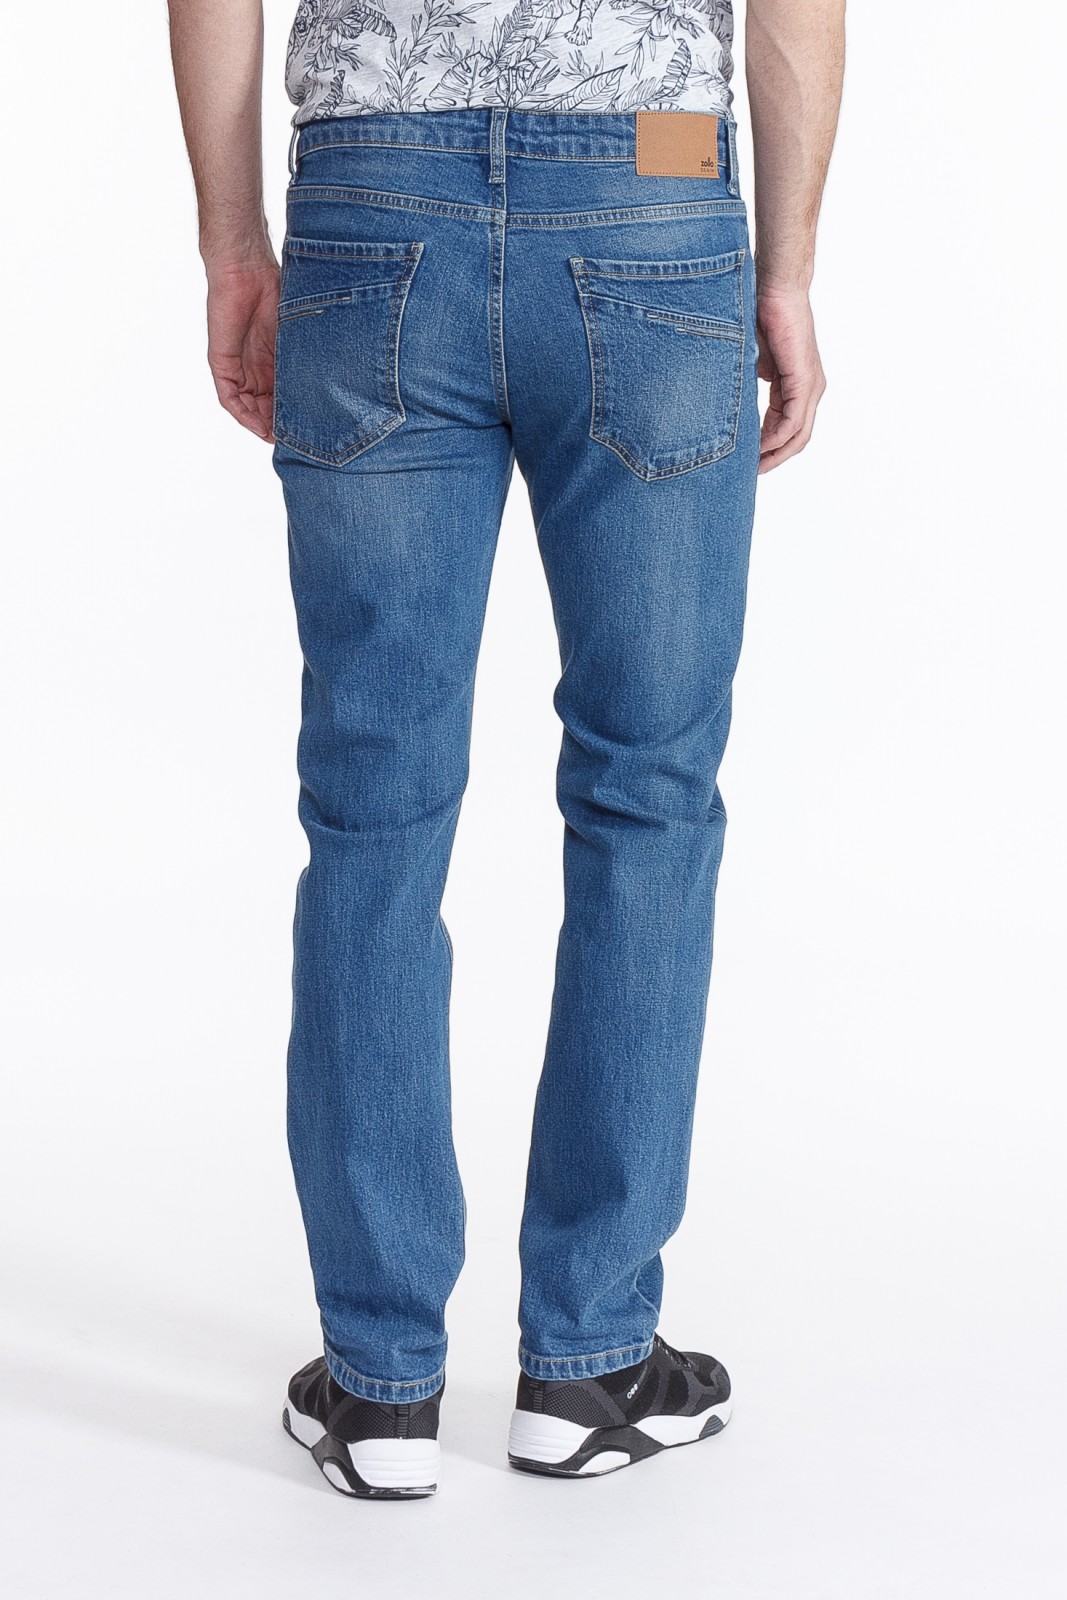 Брюки джинсовые zolla 21021716U053, цвет голубой, размер 30 - фото 2